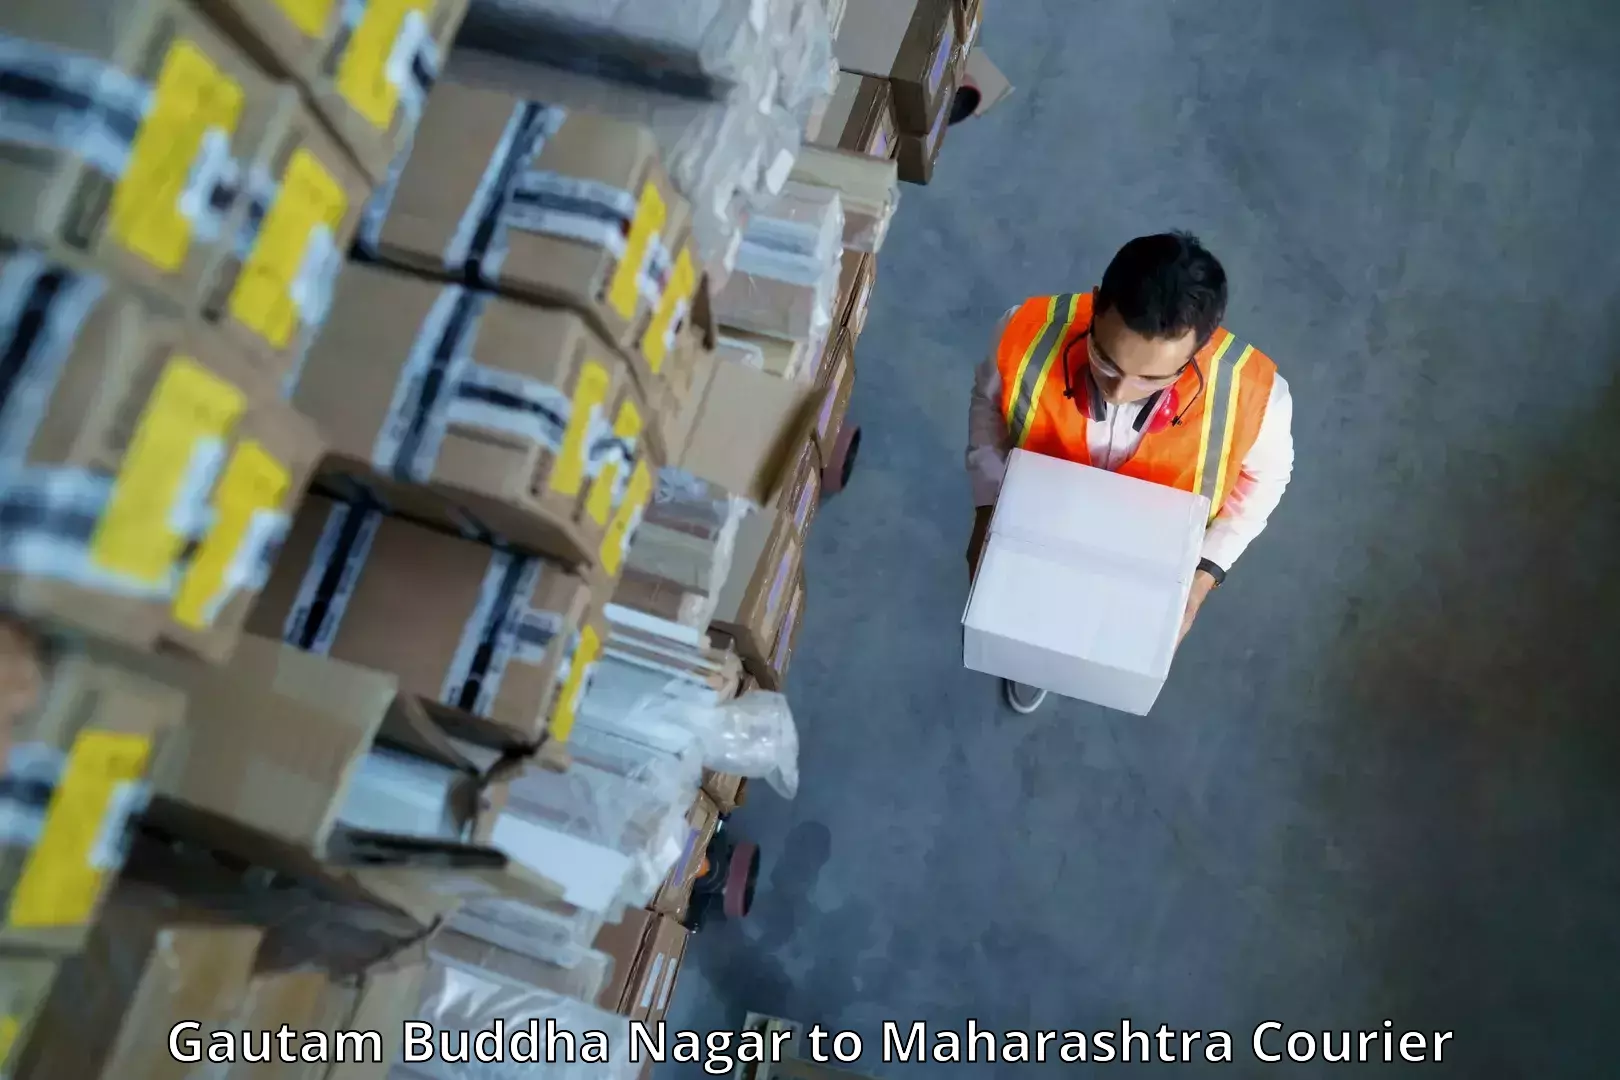 Next-generation courier services Gautam Buddha Nagar to Nagpur